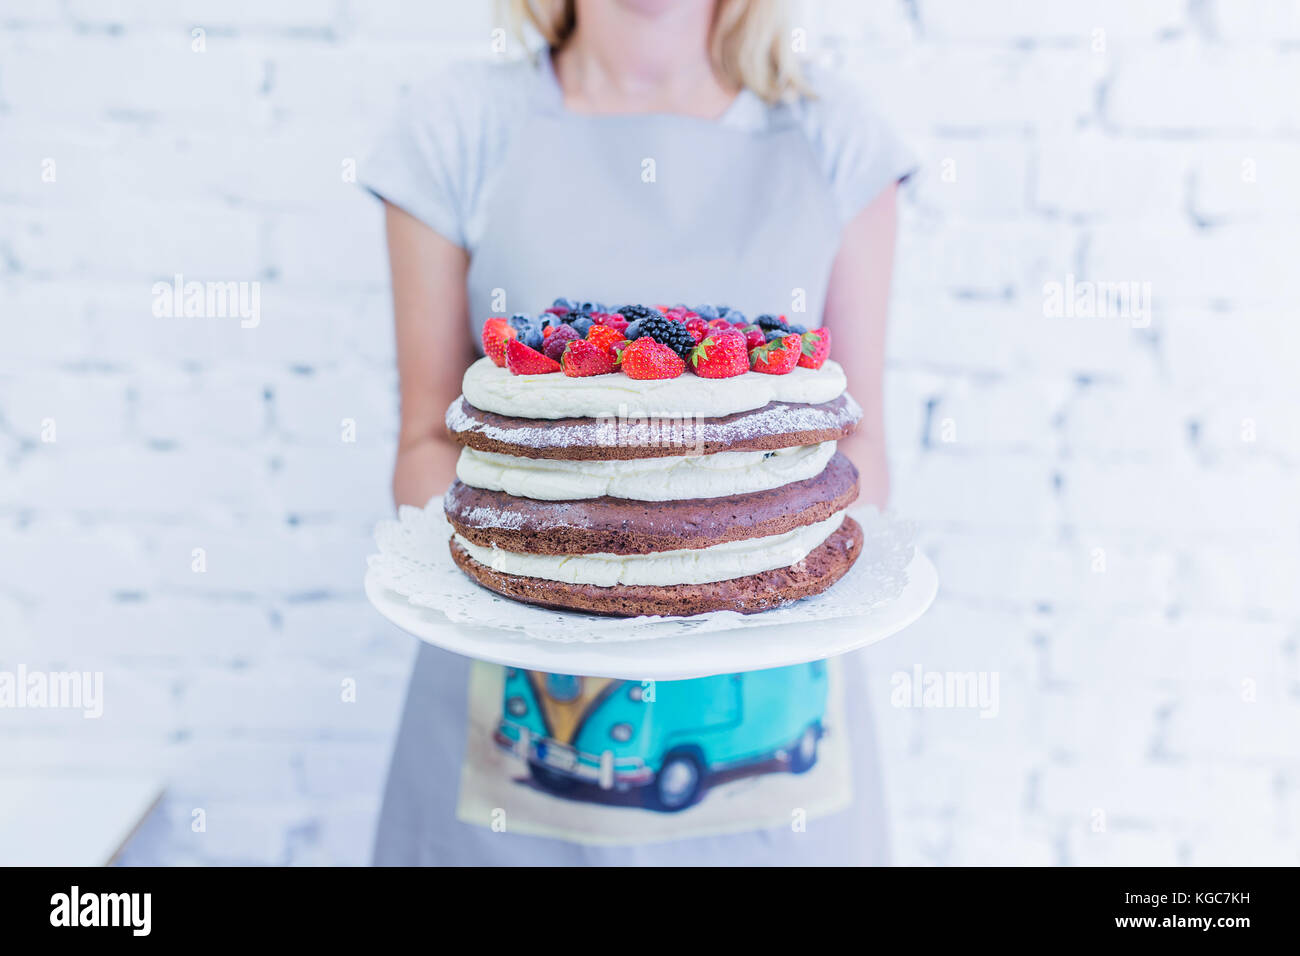 Whoopie chocolat gâteau sur la plaque avec les baies fraîches, women's hands holding. fond blanc. Banque D'Images